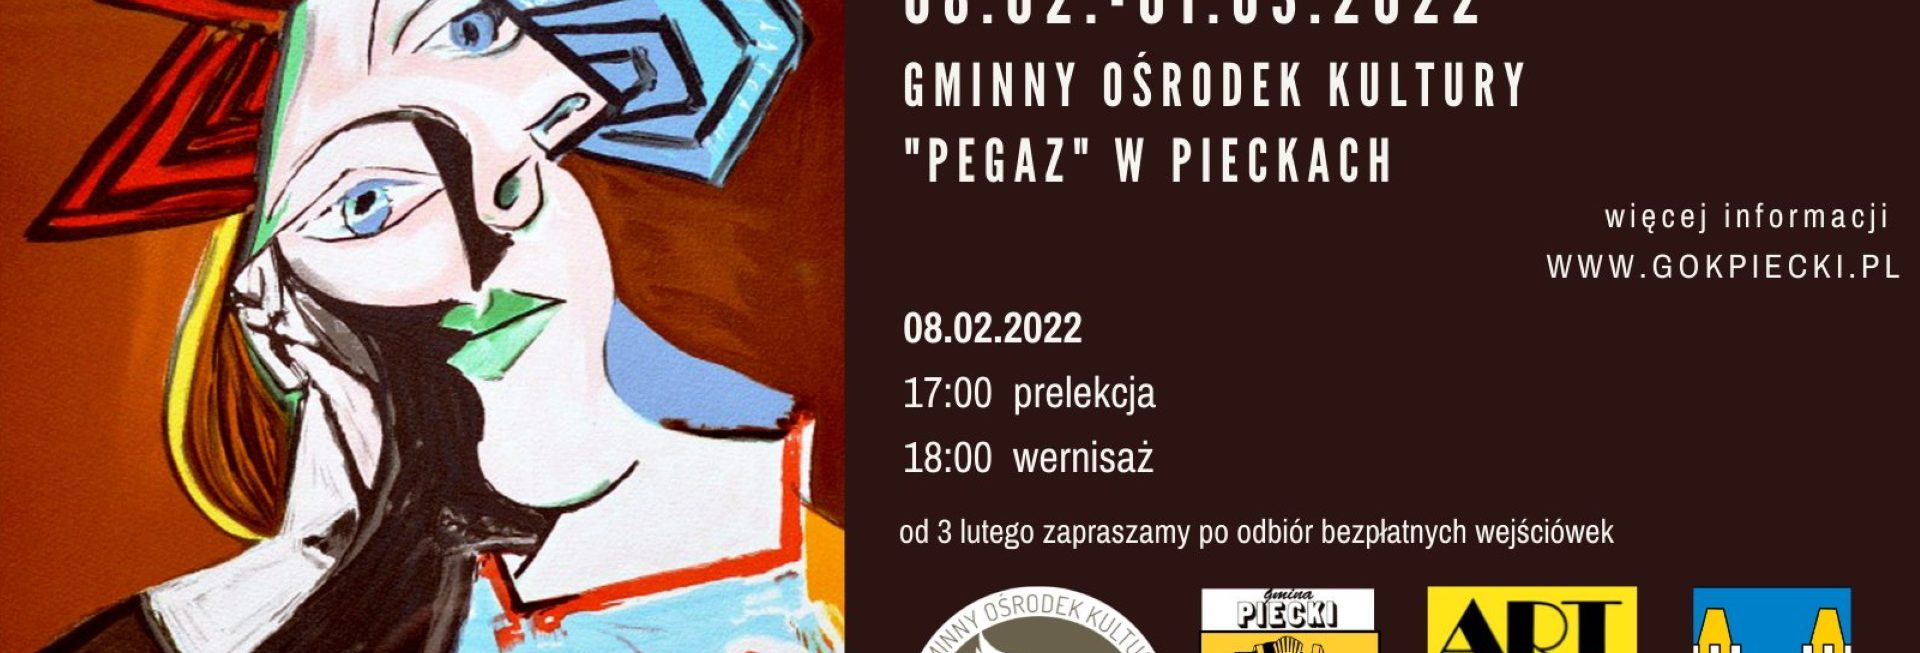 Plakat graficzny zapraszający do miejscowości Piecki na Picasso w Pieckach - Wernisaż "Grafika nieokiełznana".